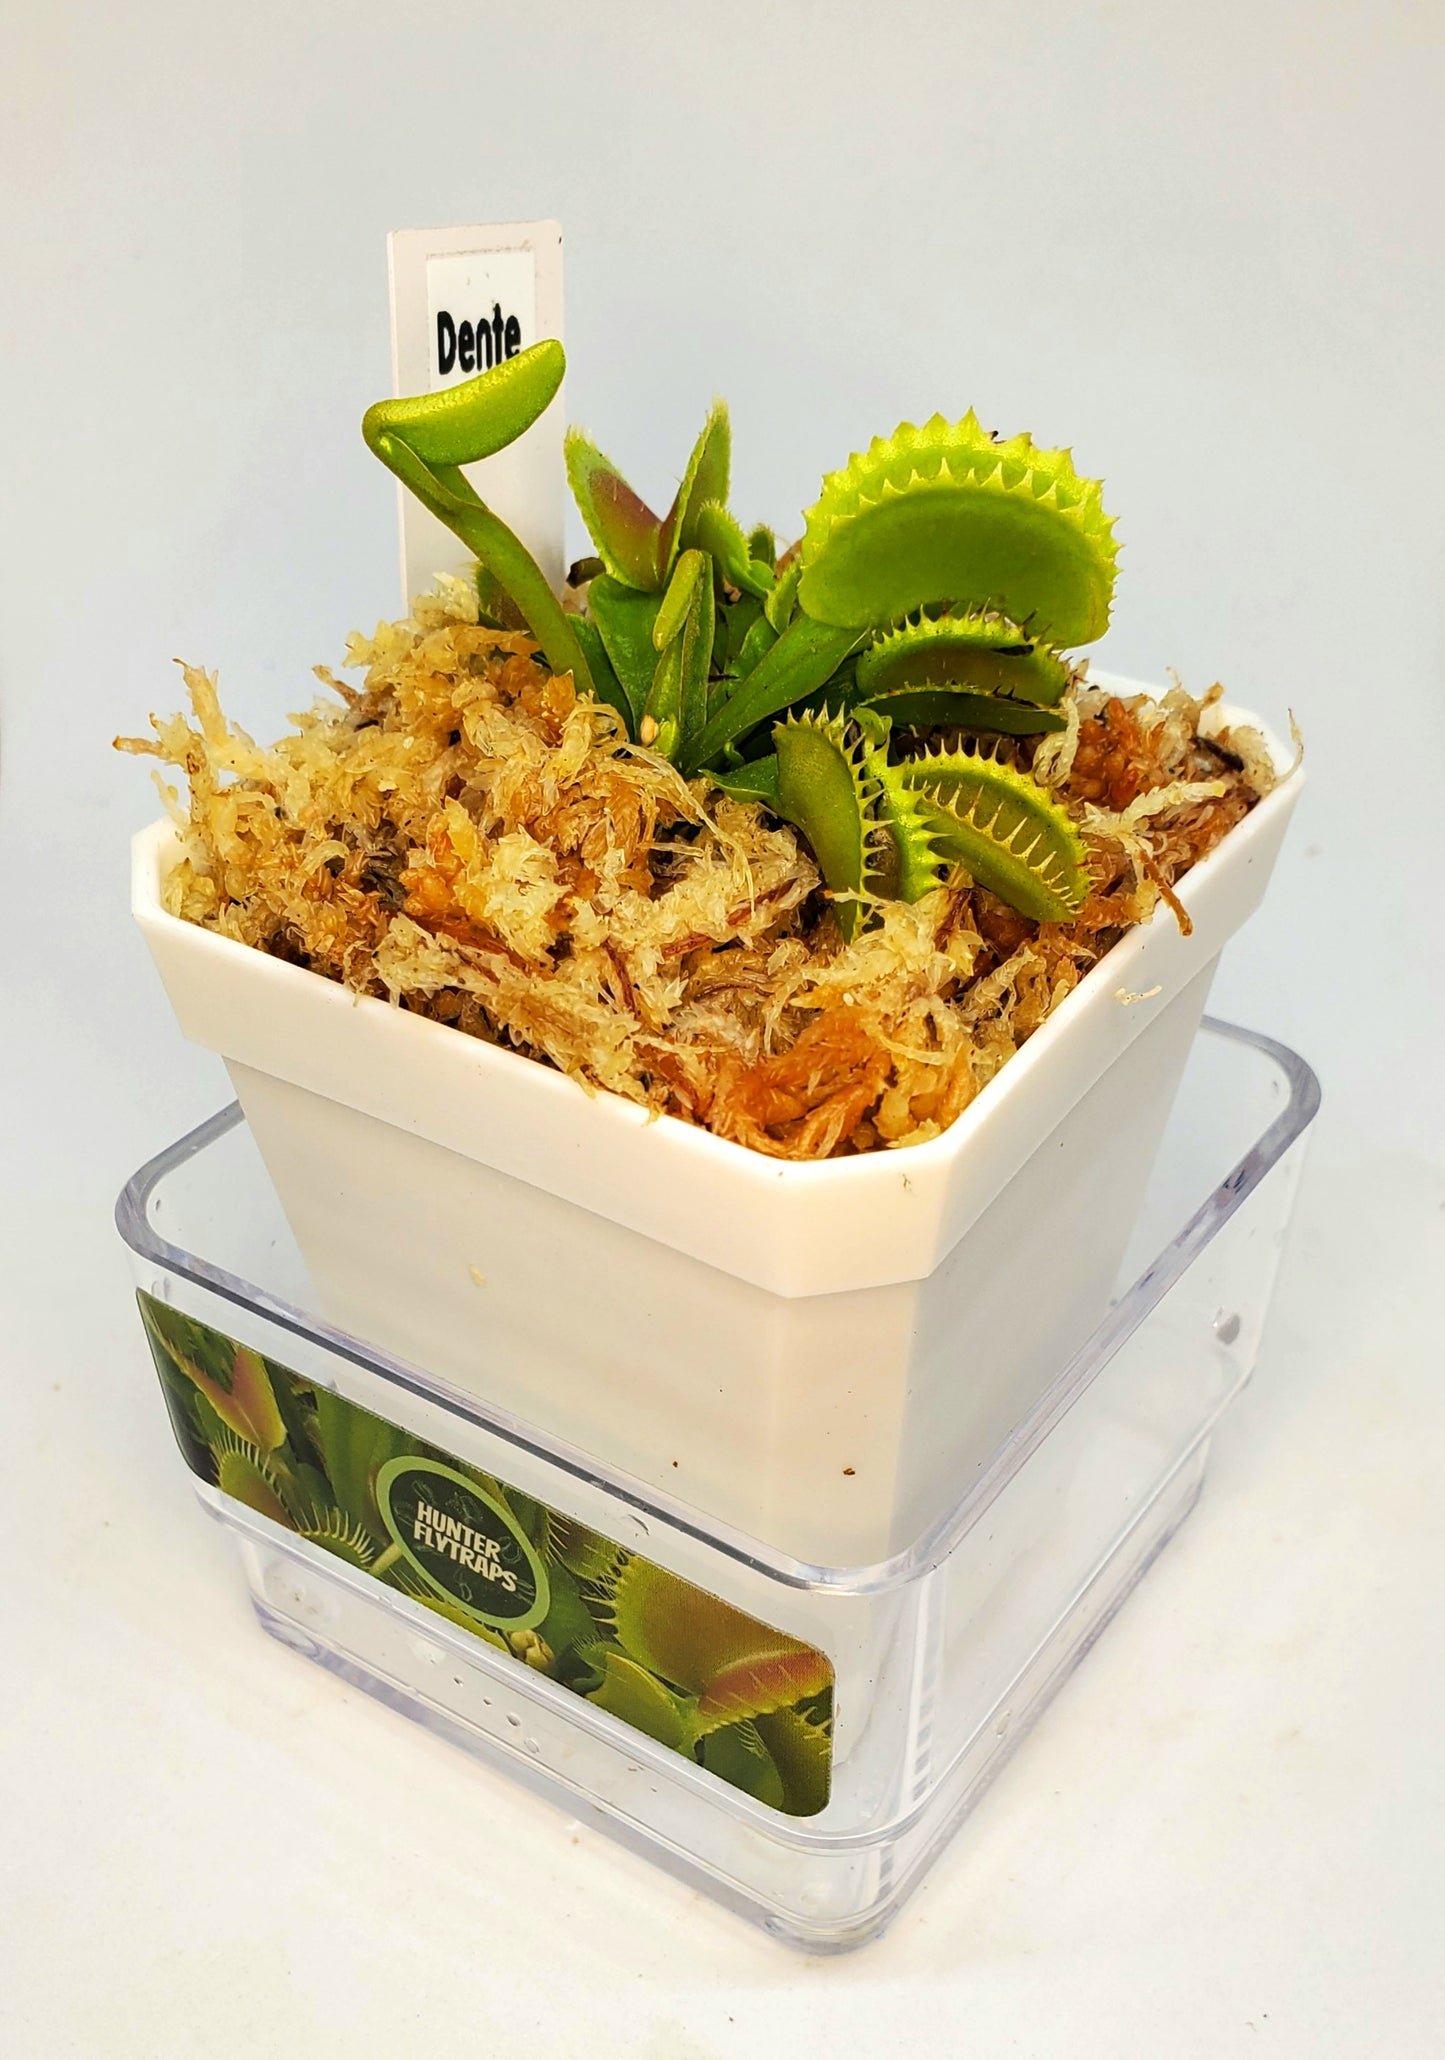 Dente - Venus Flytrap Carnivorous Plant